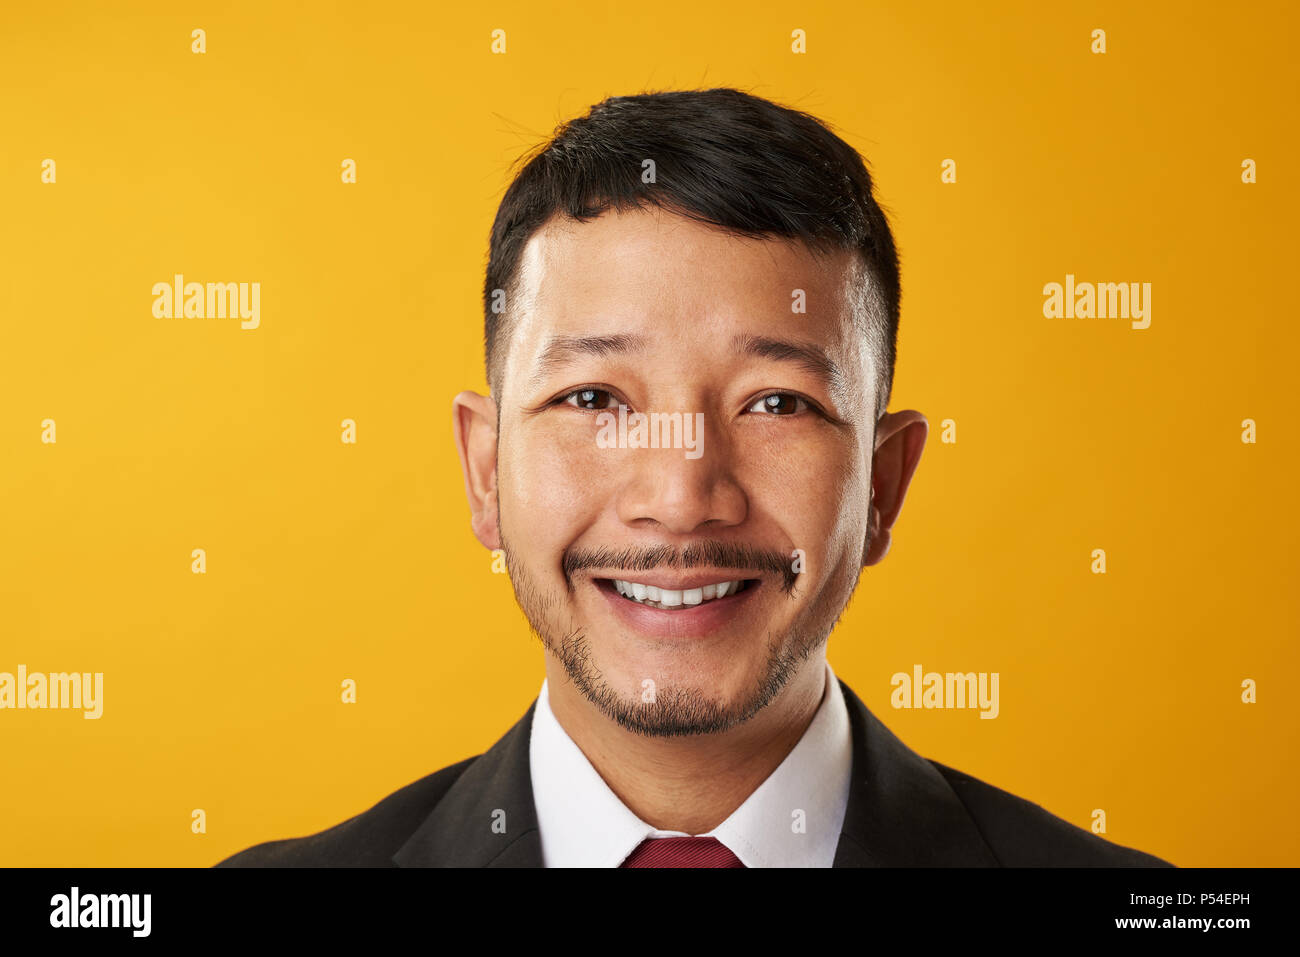 Sorridenti asian business man headshot ritratto isolato su sfondo giallo Foto Stock